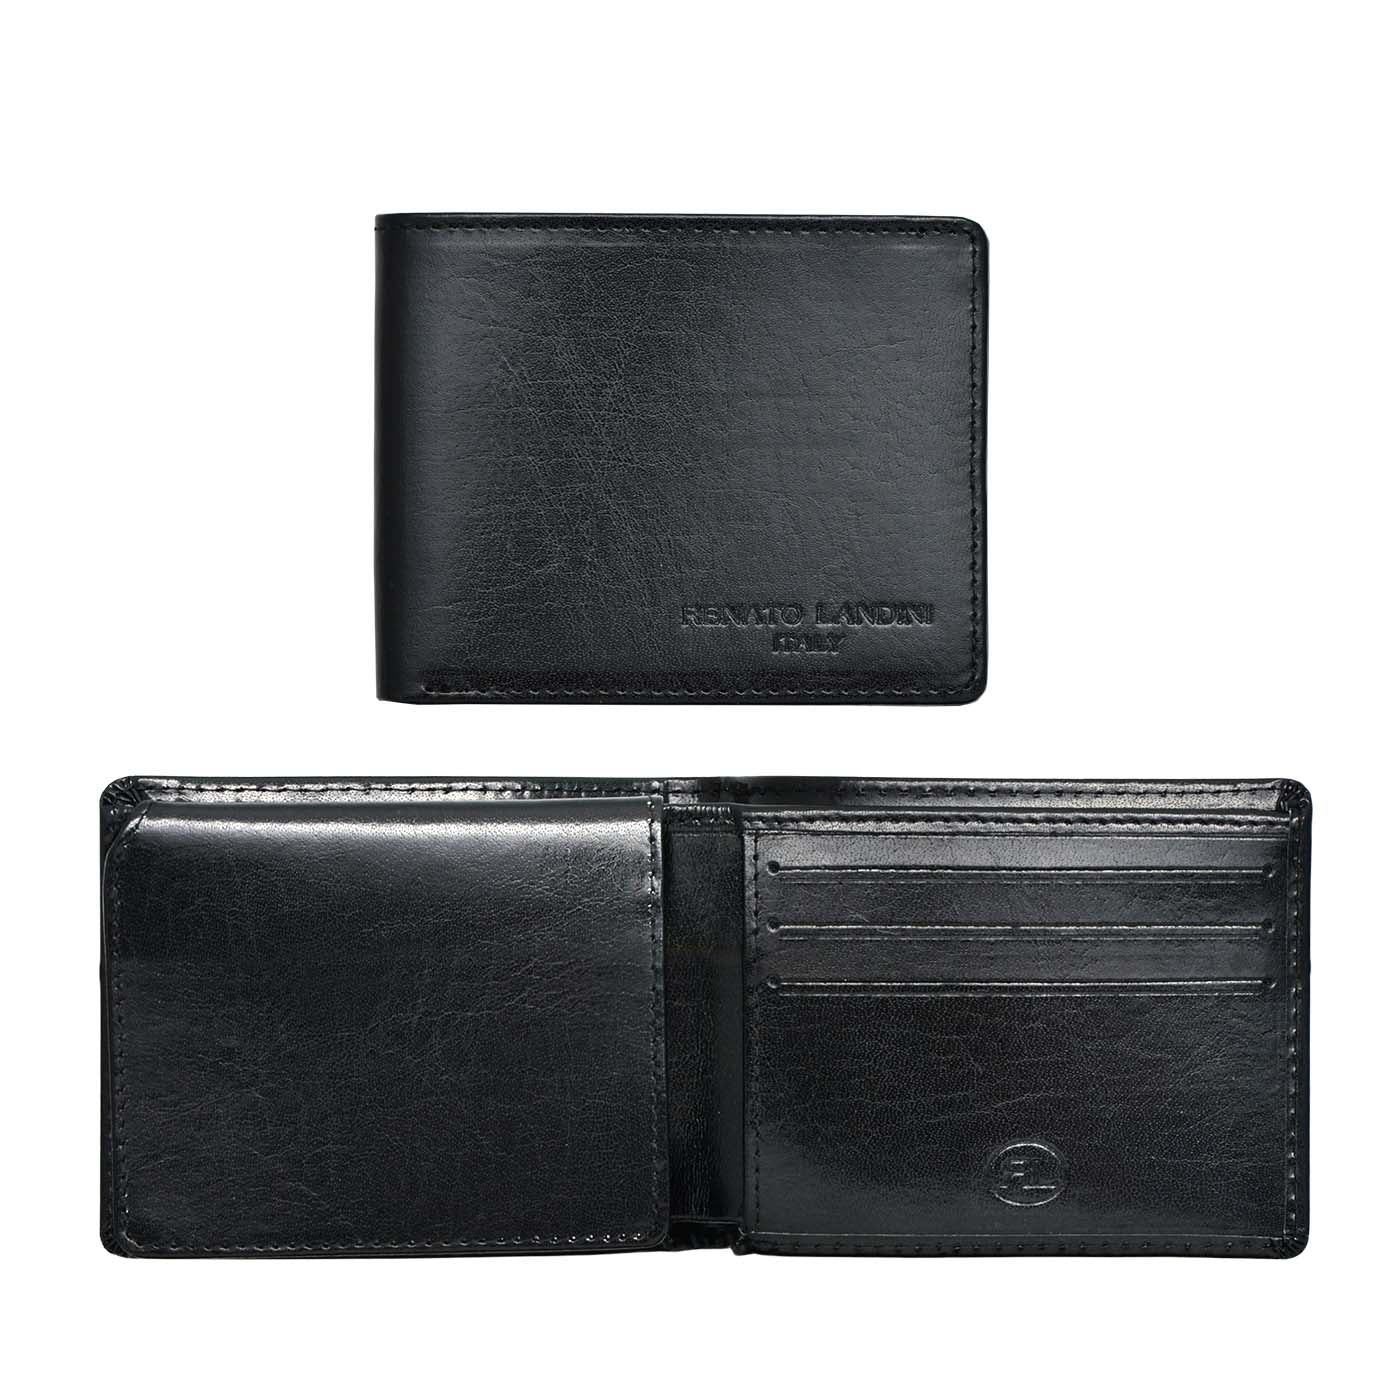 RENATO LANDINI Gift Set: Black Leather Bag + Pen + Men's Wallet + Key Holder